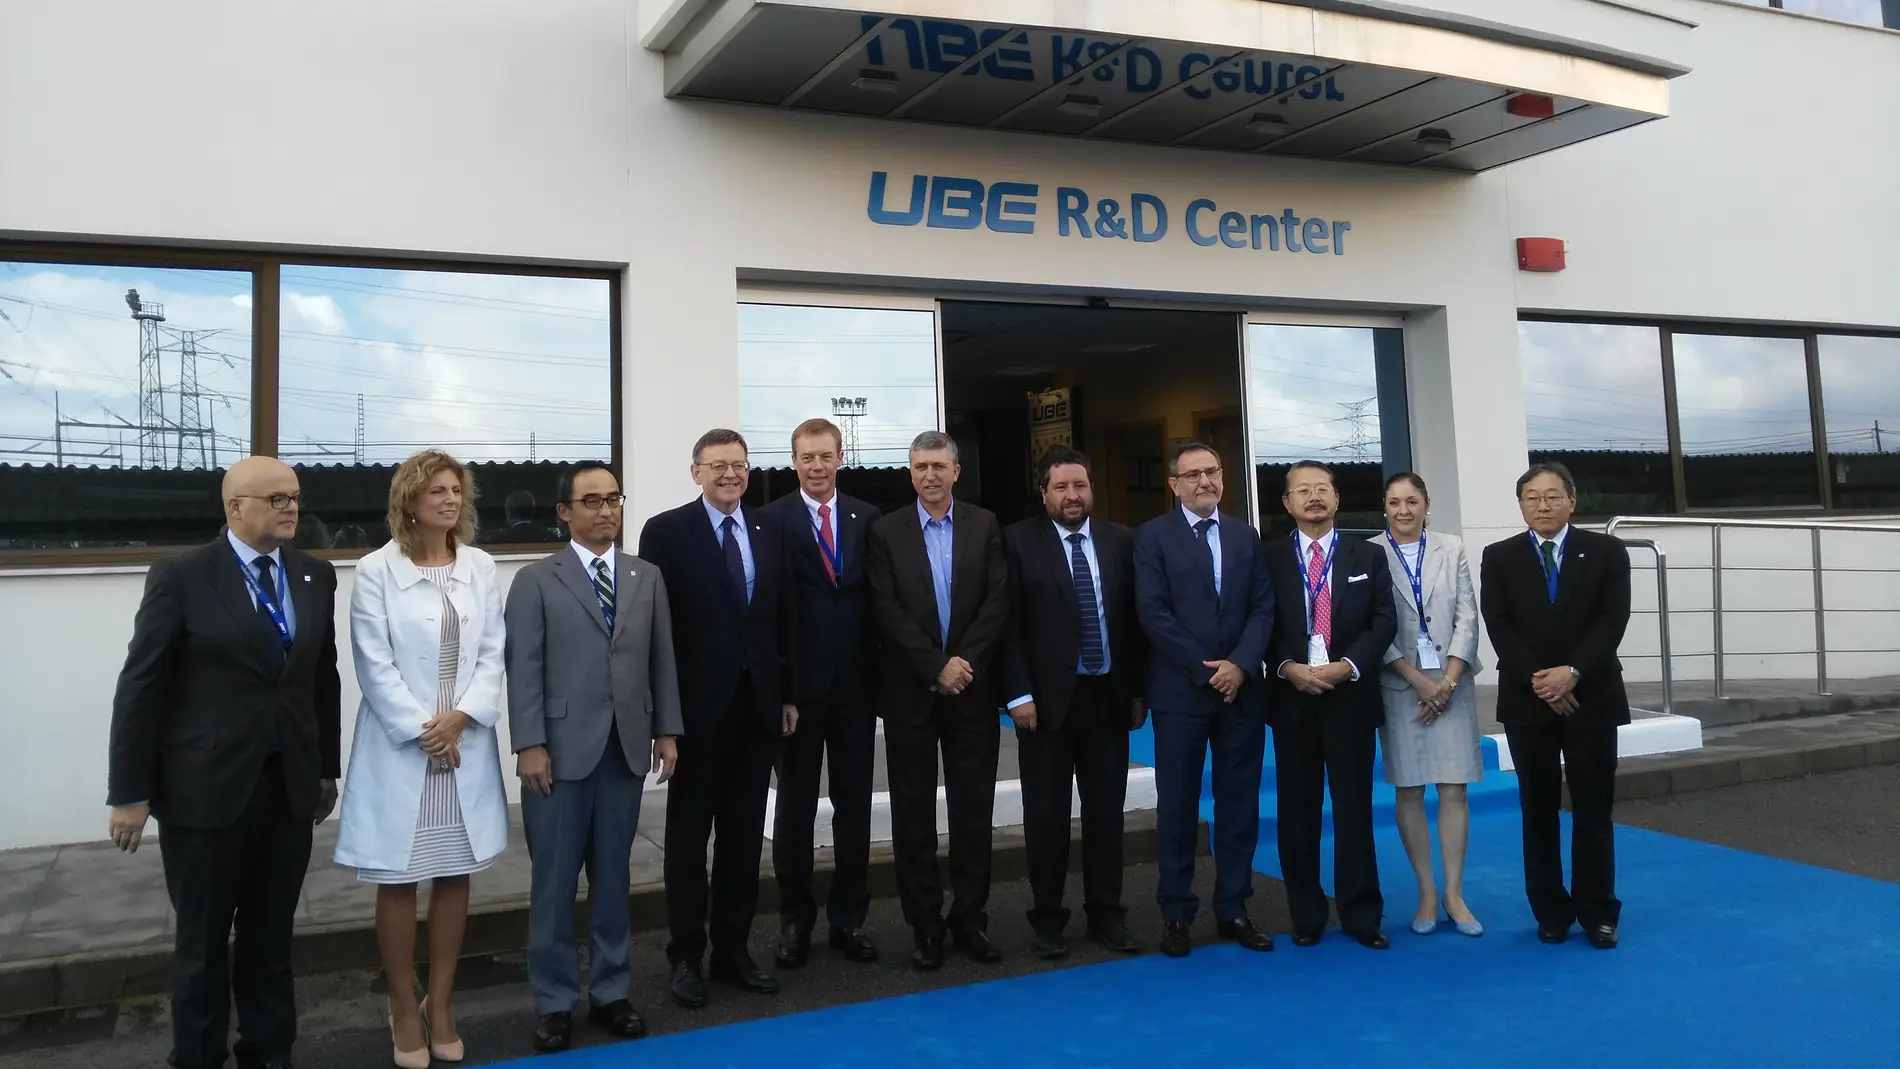 El president de la Generalitat a su llegada a UBE junto a los responsables de la empresa.